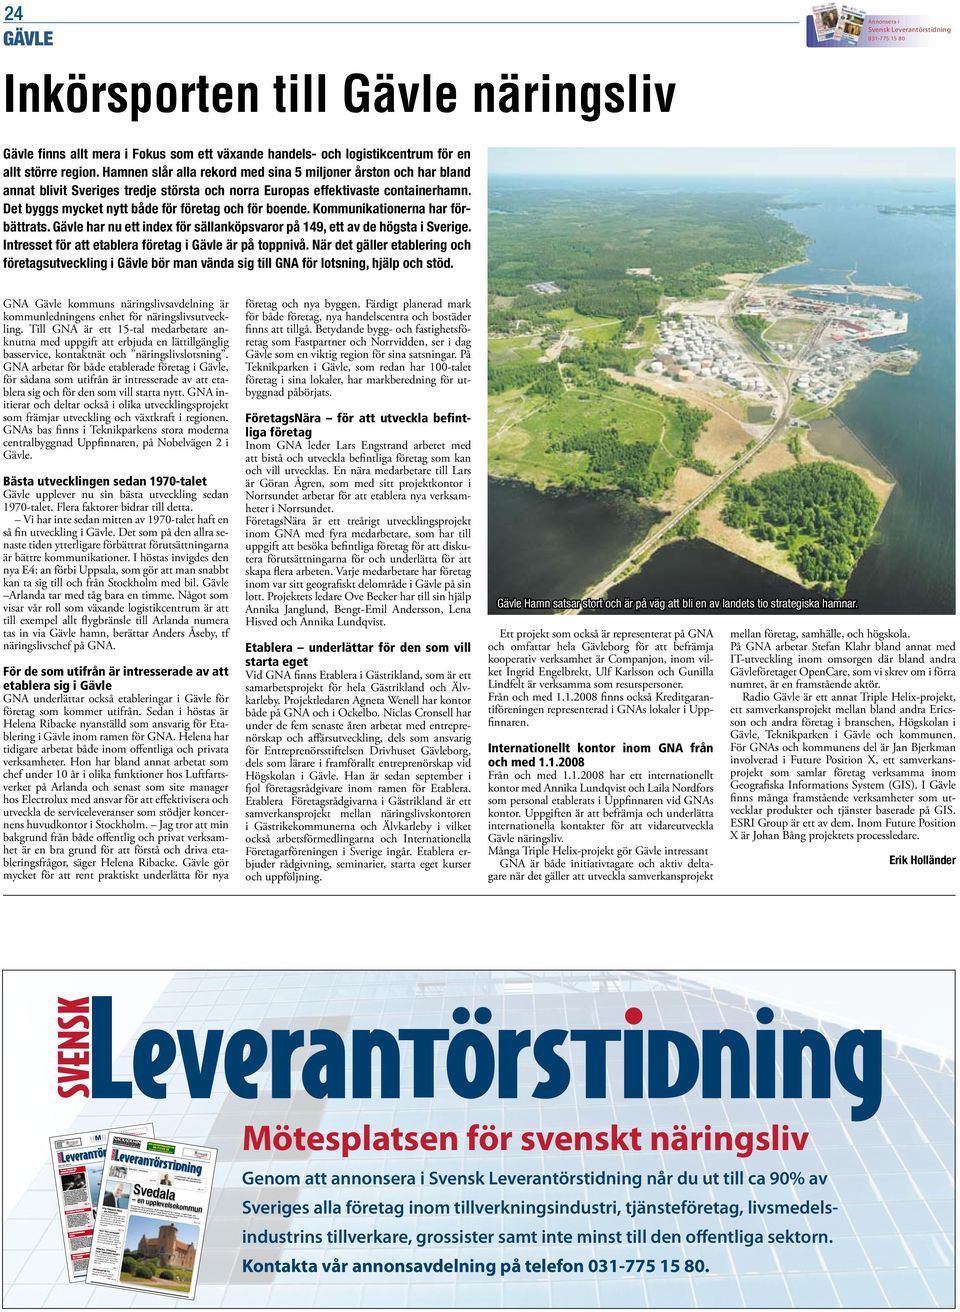 Hamnen slår alla rekord med sina 5 miljoner årston och har bland annat blivit Sveriges tredje största och norra Europas effektivaste containerhamn.